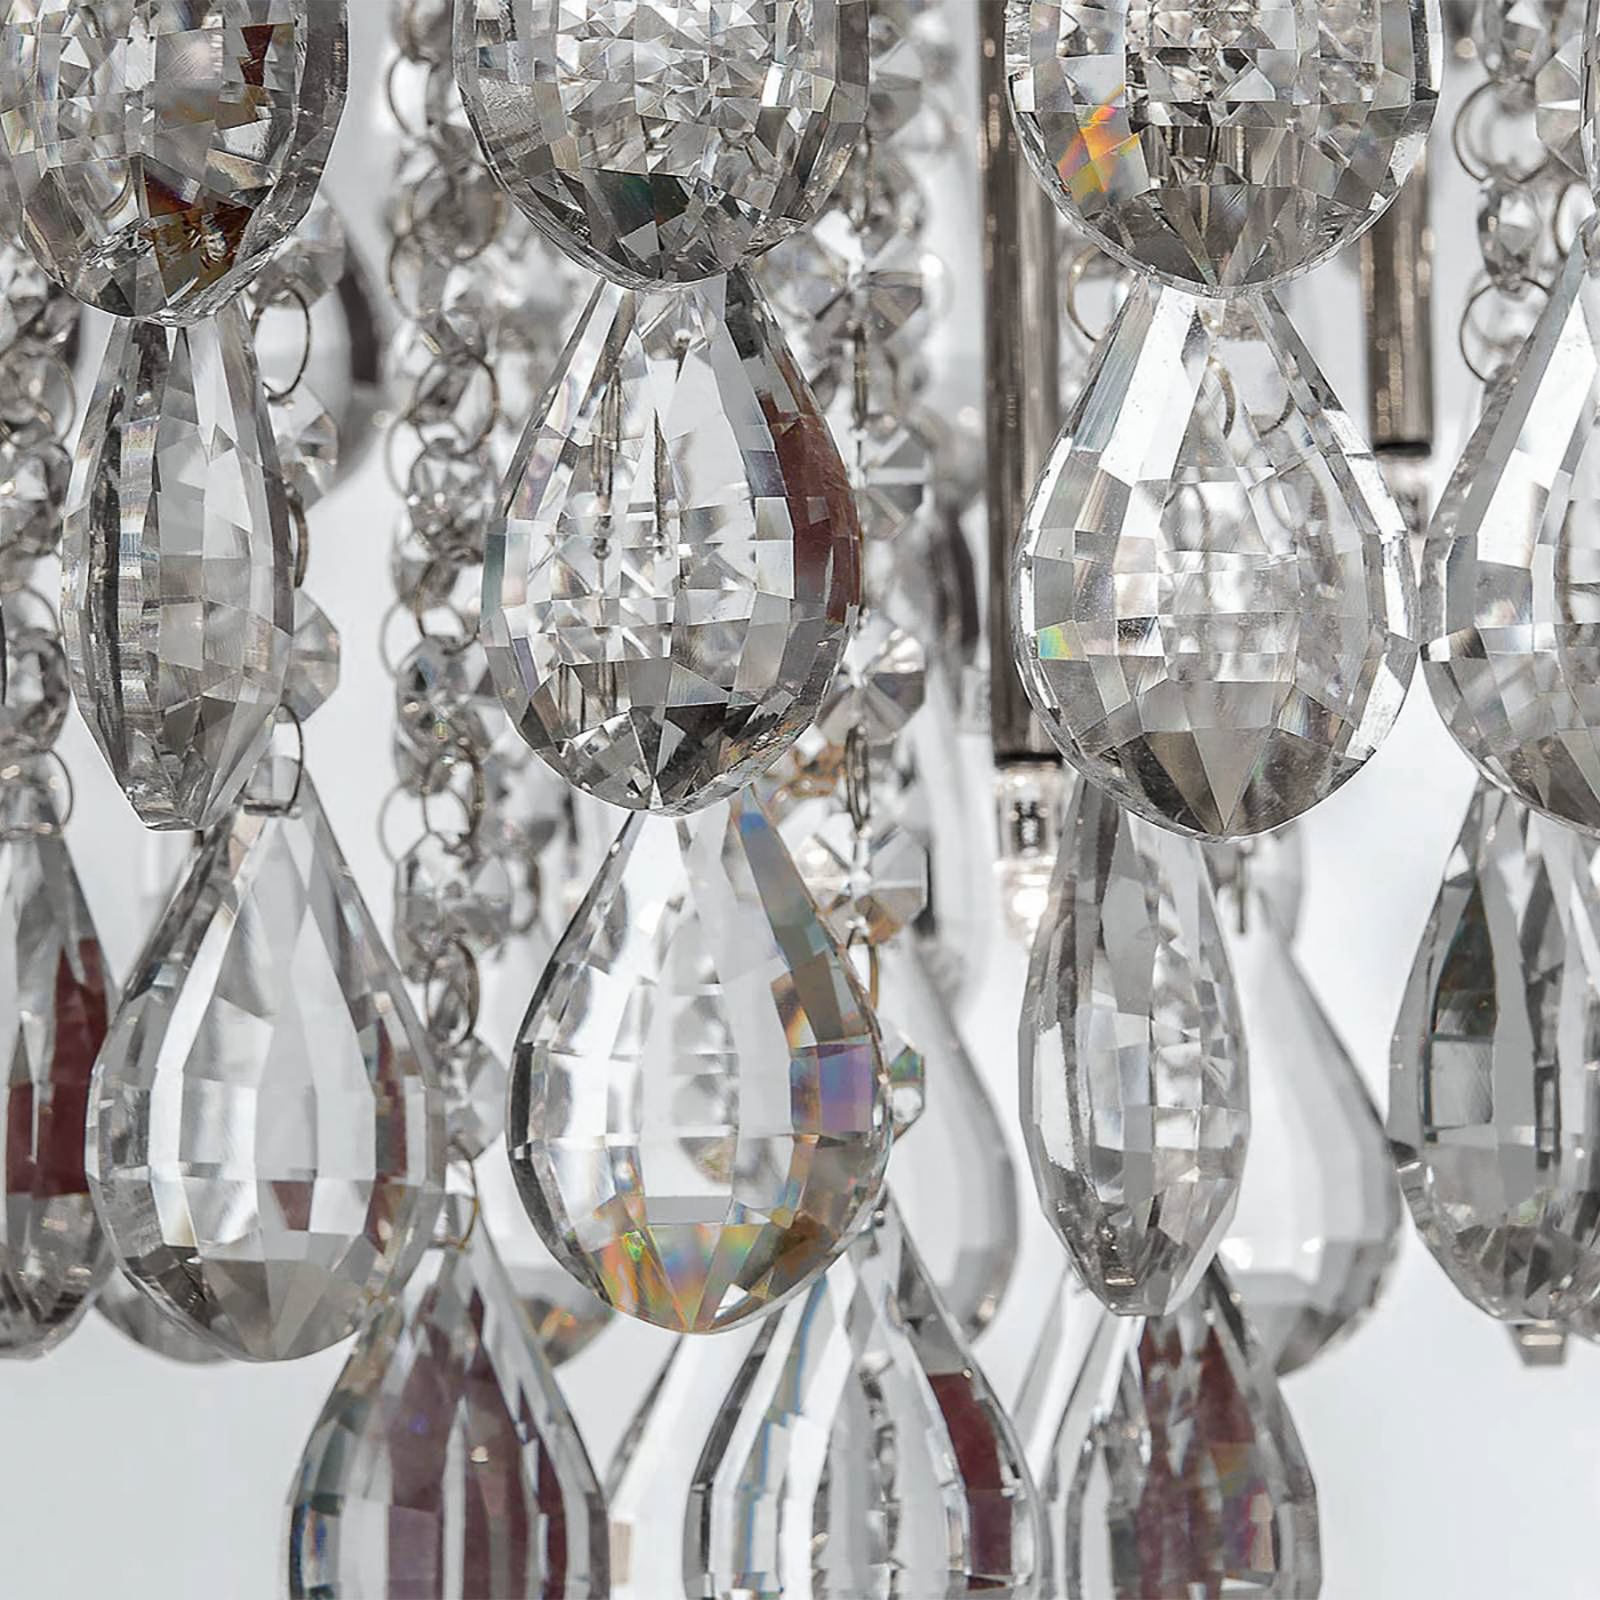 Celeste ceiling lamp with K9 crystals, Ø75cm chrome